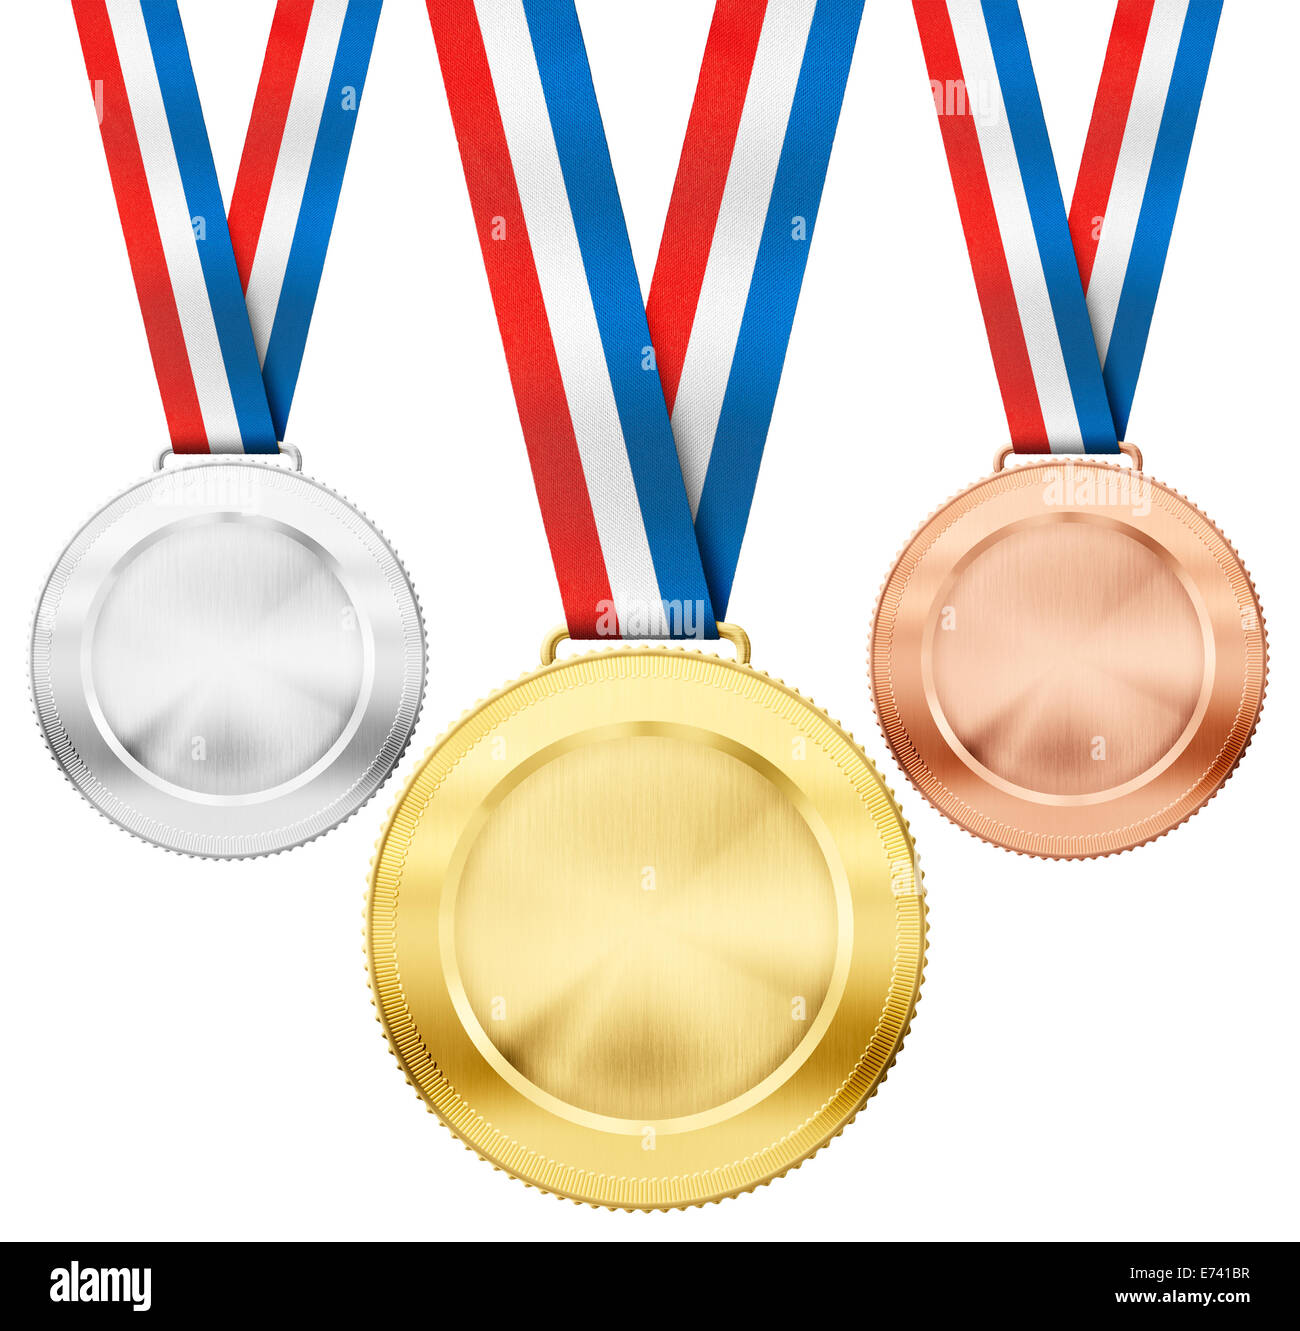 Goldmedaillen, Silber, Bronze realistische Sport mit Tricolor Band Satz isoliert auf weiss Stockfoto